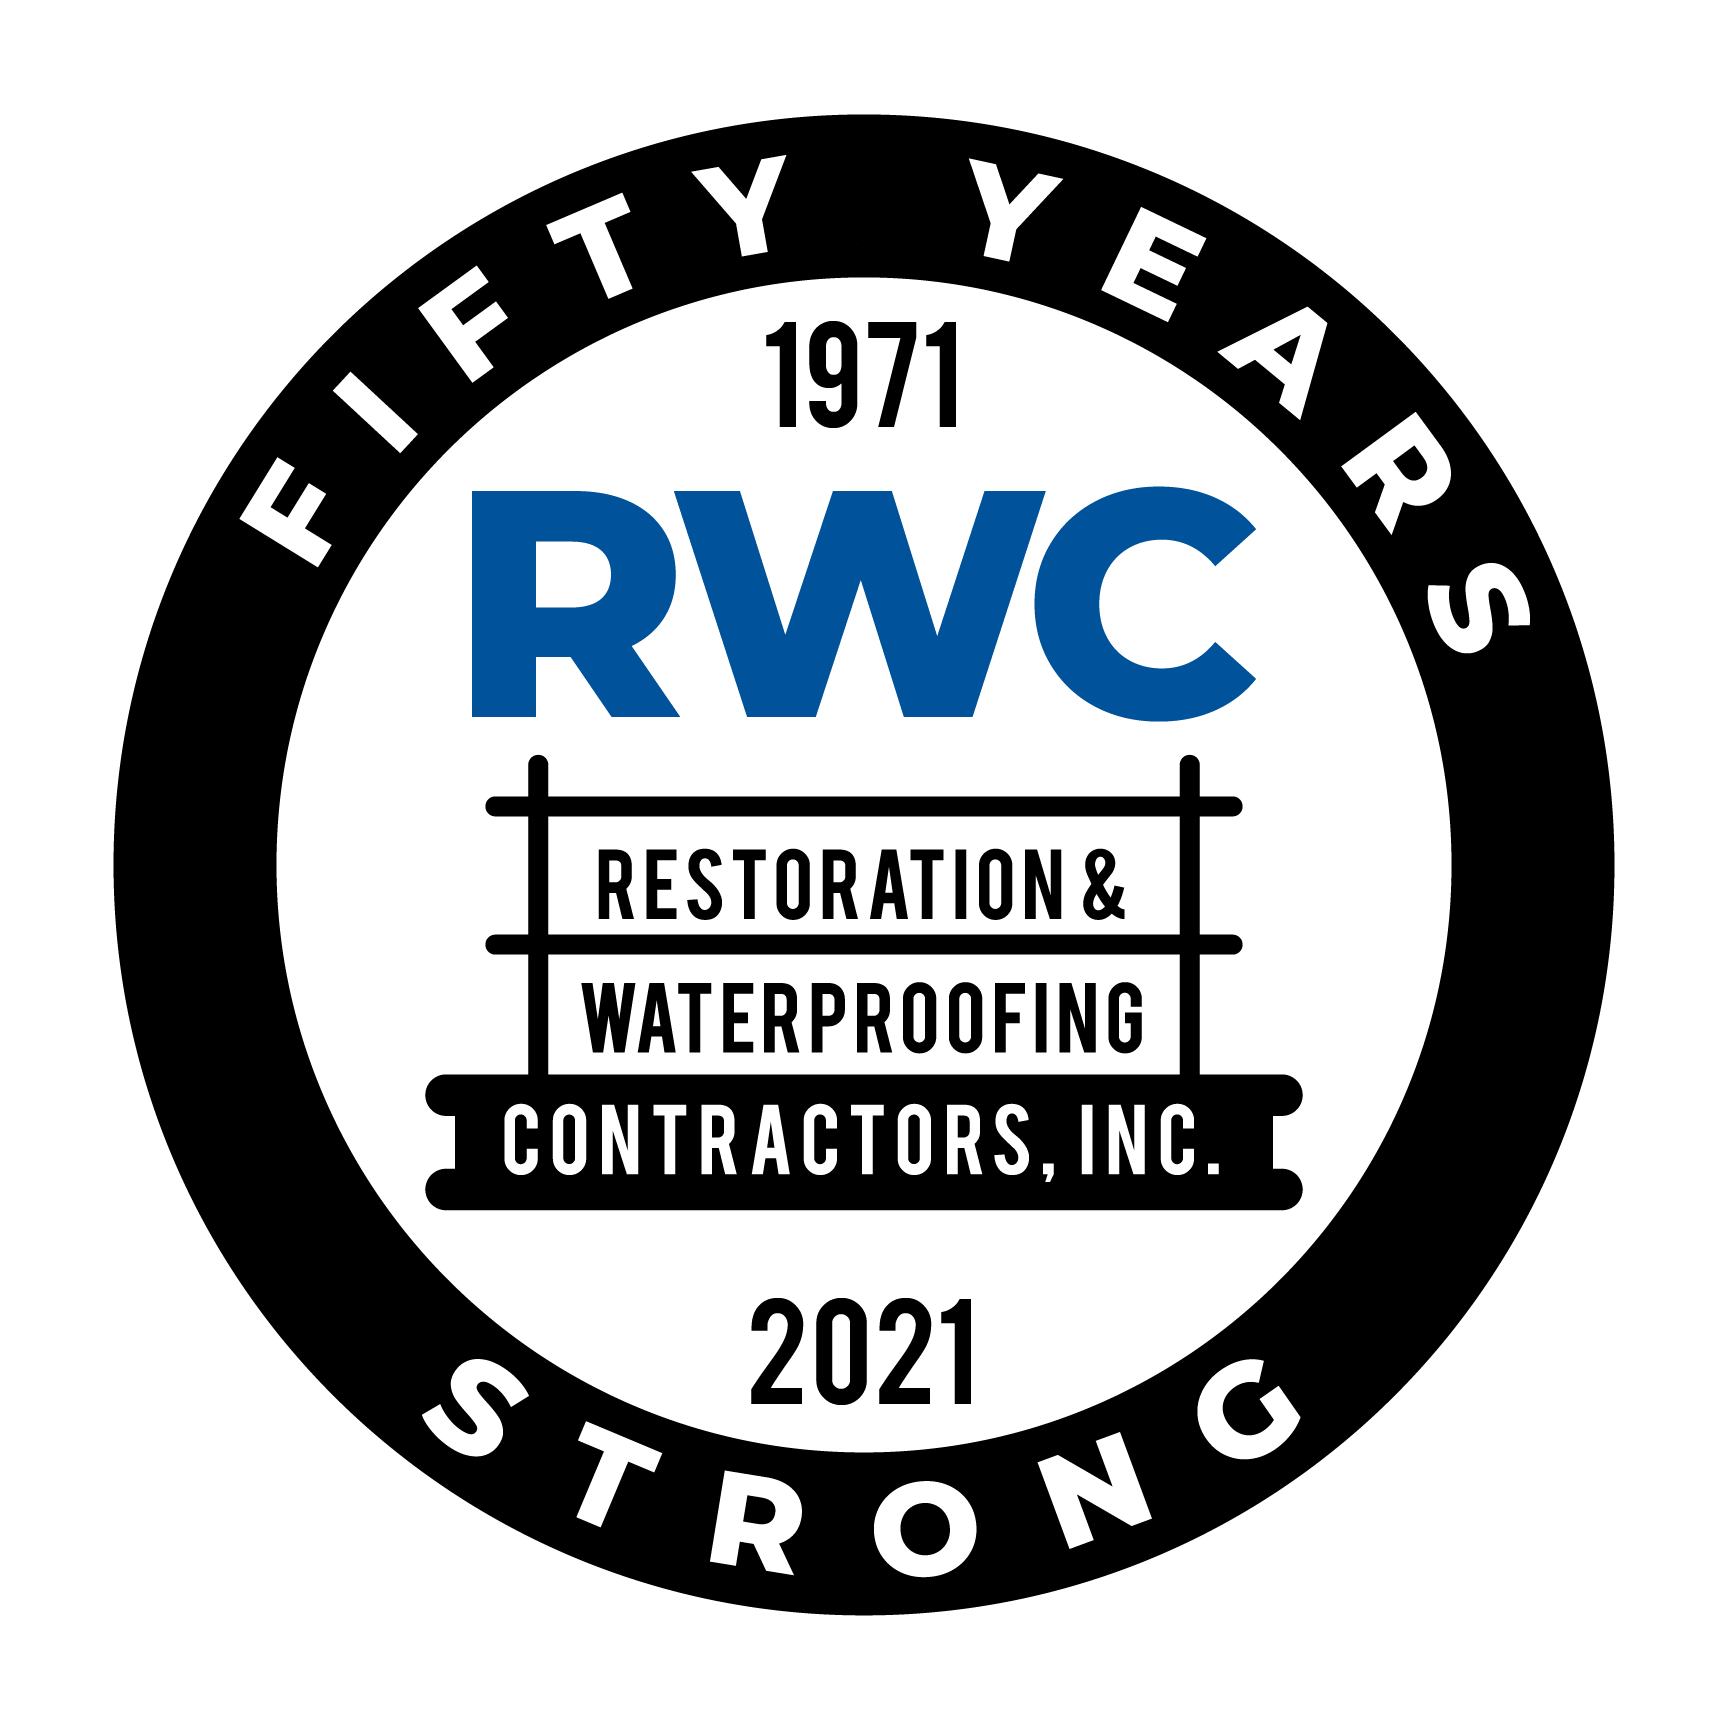 Restoration & Waterproofing Contractors, Inc,